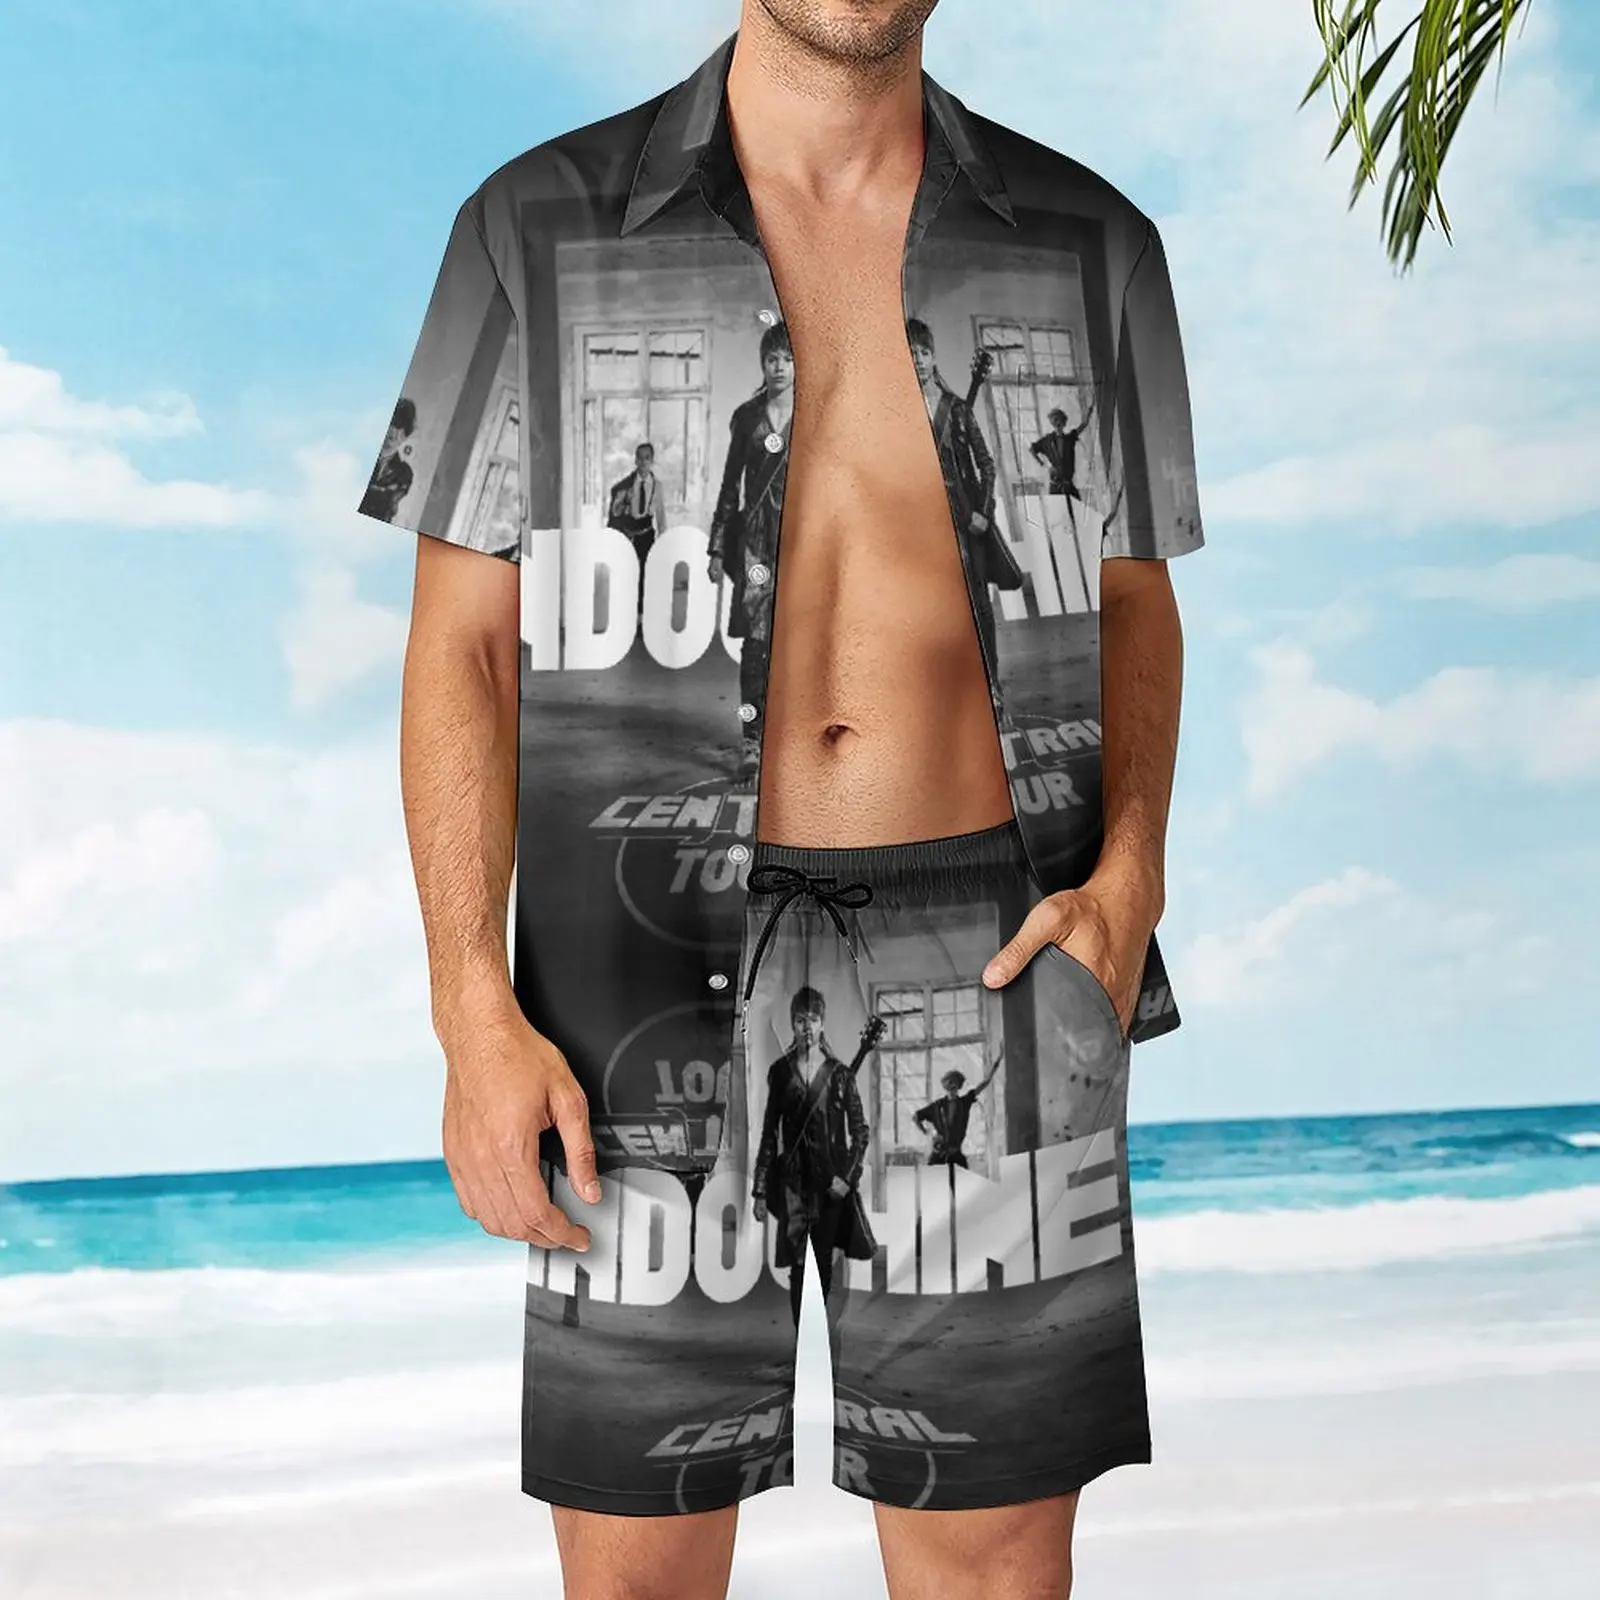 

Indochine Central Tour En Tournée Rire Et Chansonses Men's Beach Suit Casual Graphic 2 Pieces Suit Vintage Swimming USA Size